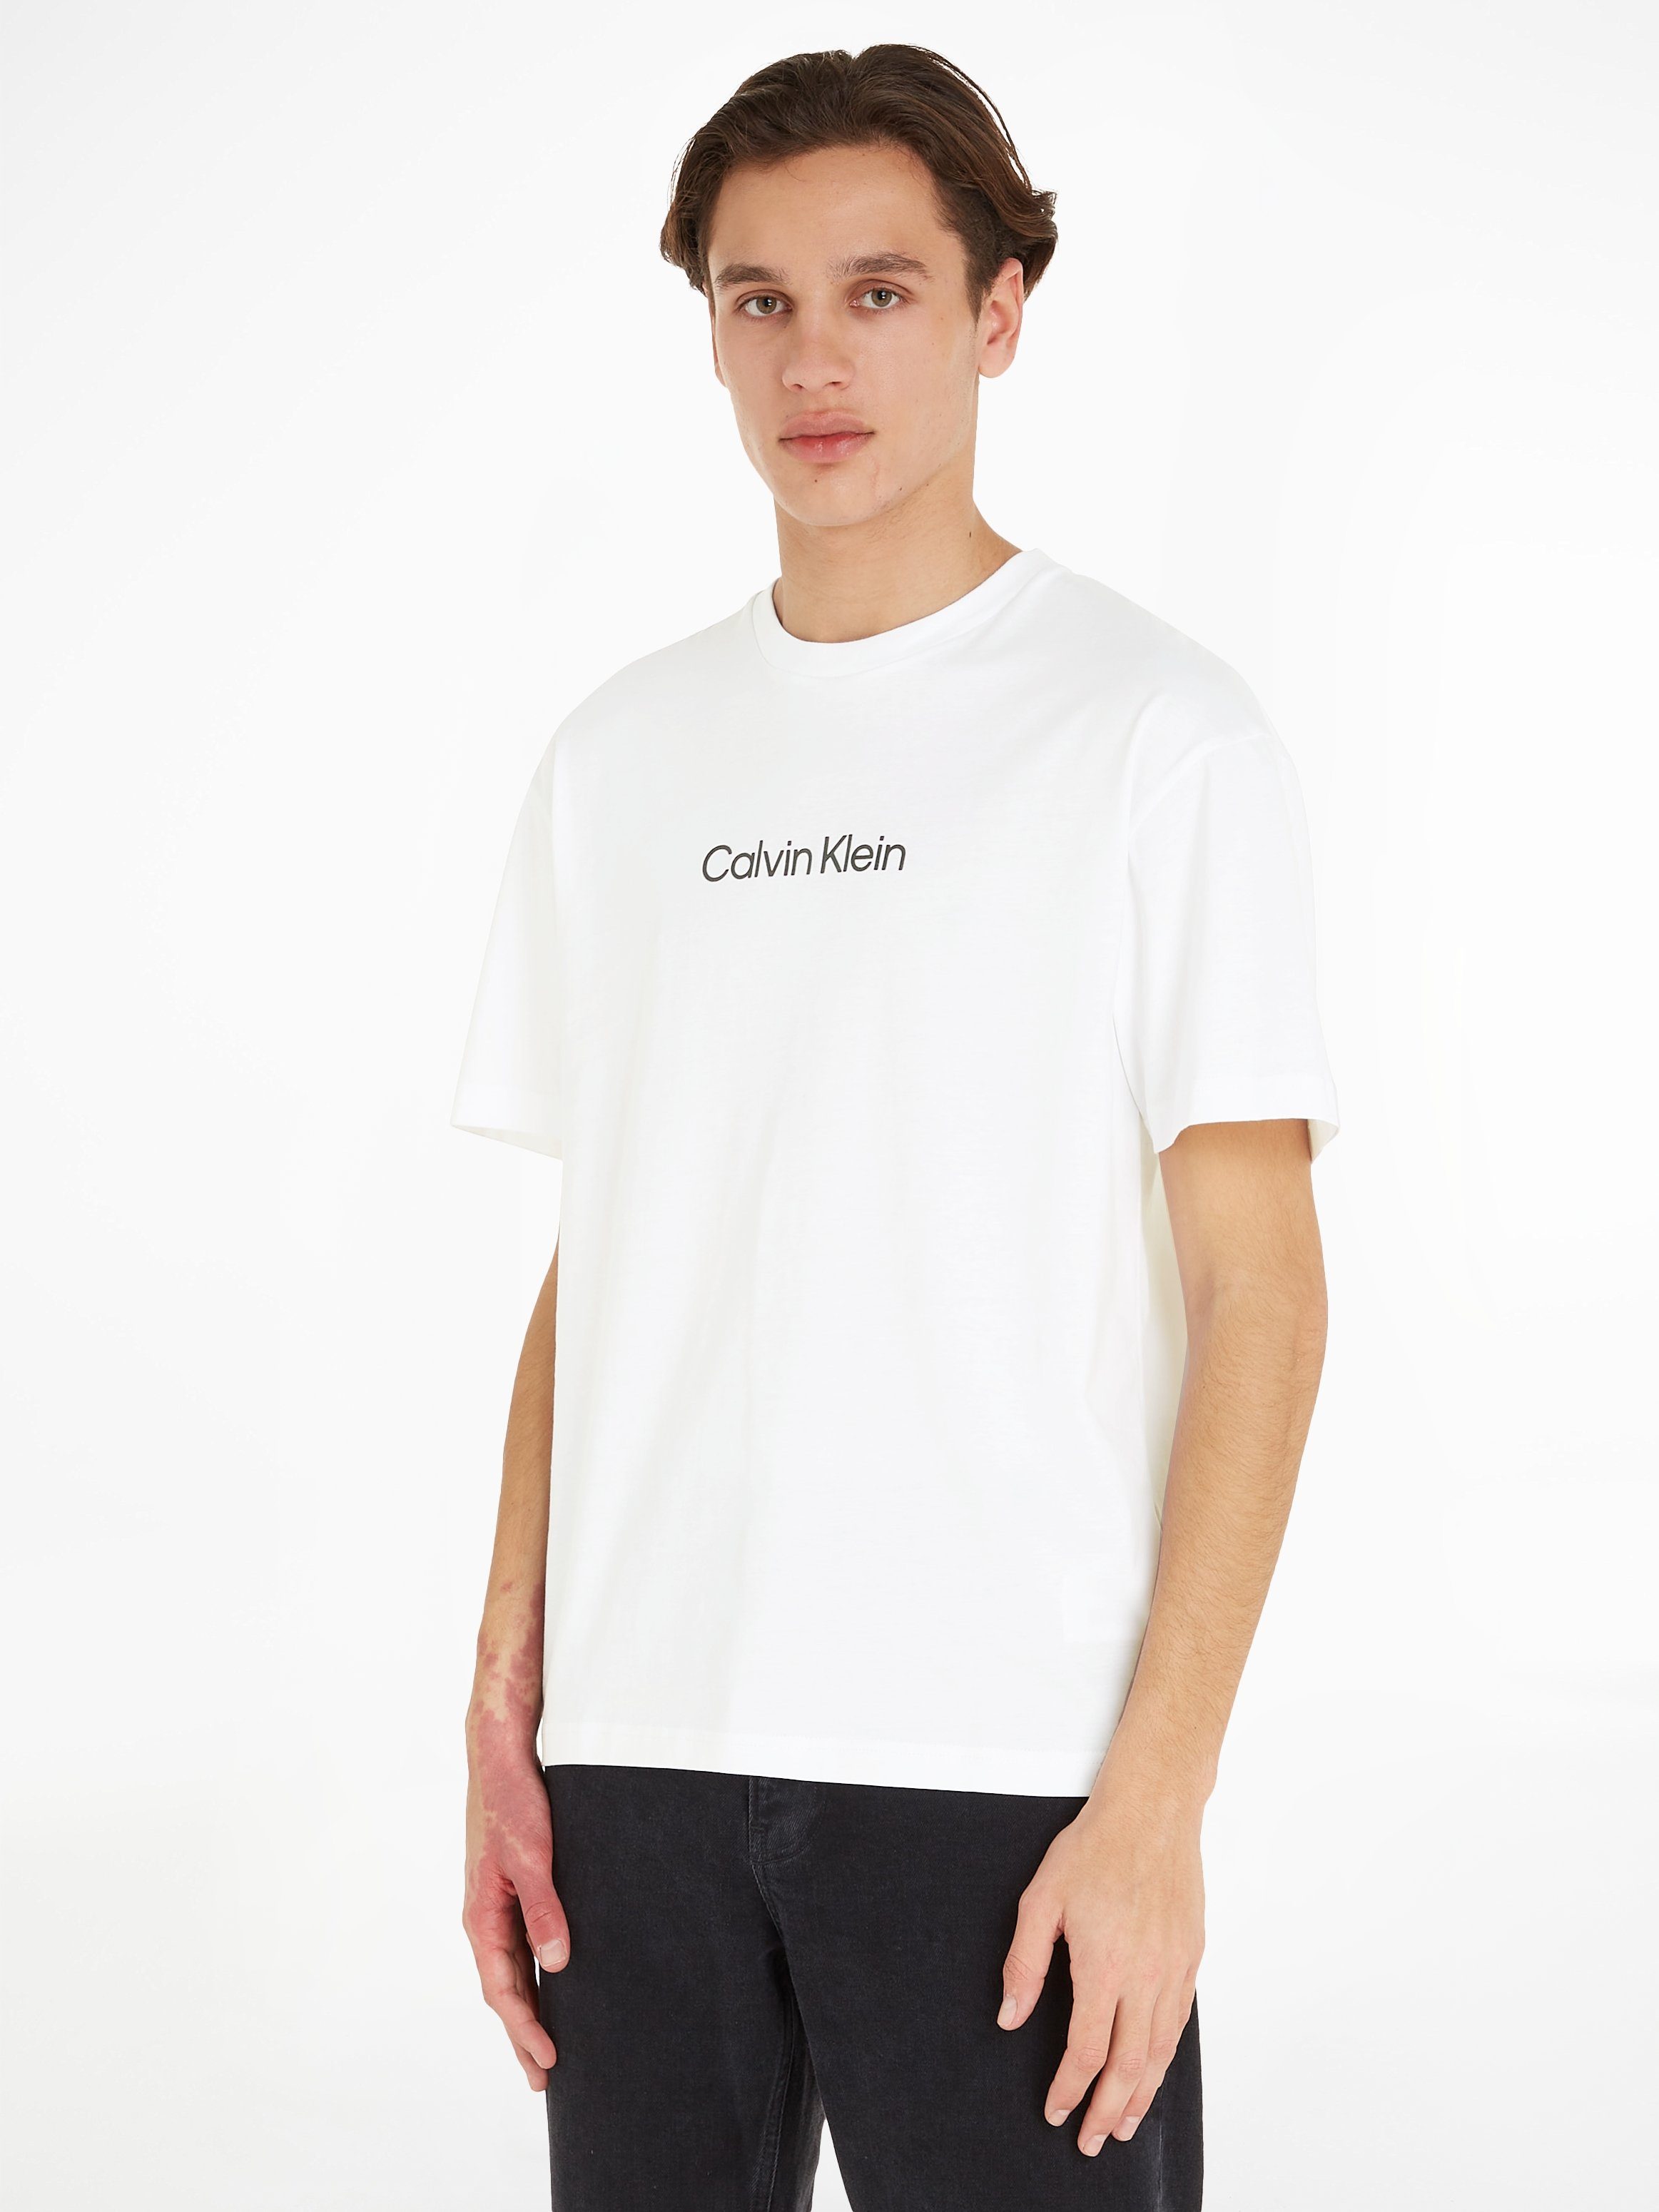 HERO aufgedrucktem T-SHIRT LOGO T-Shirt White Calvin Klein Bright mit Markenlabel COMFORT